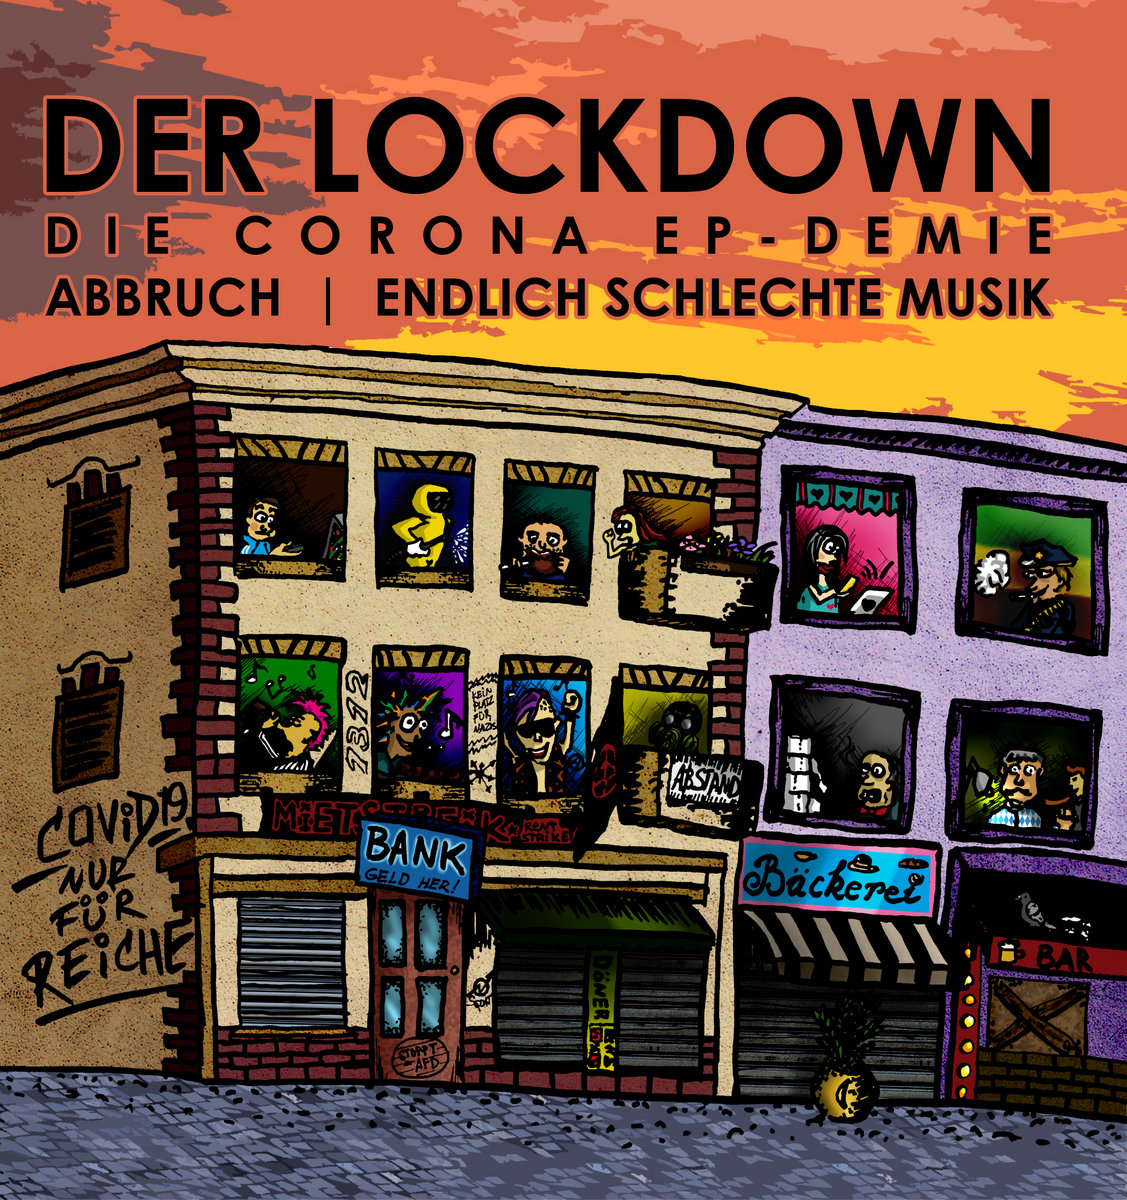 Der Lockdown 7" (2020)